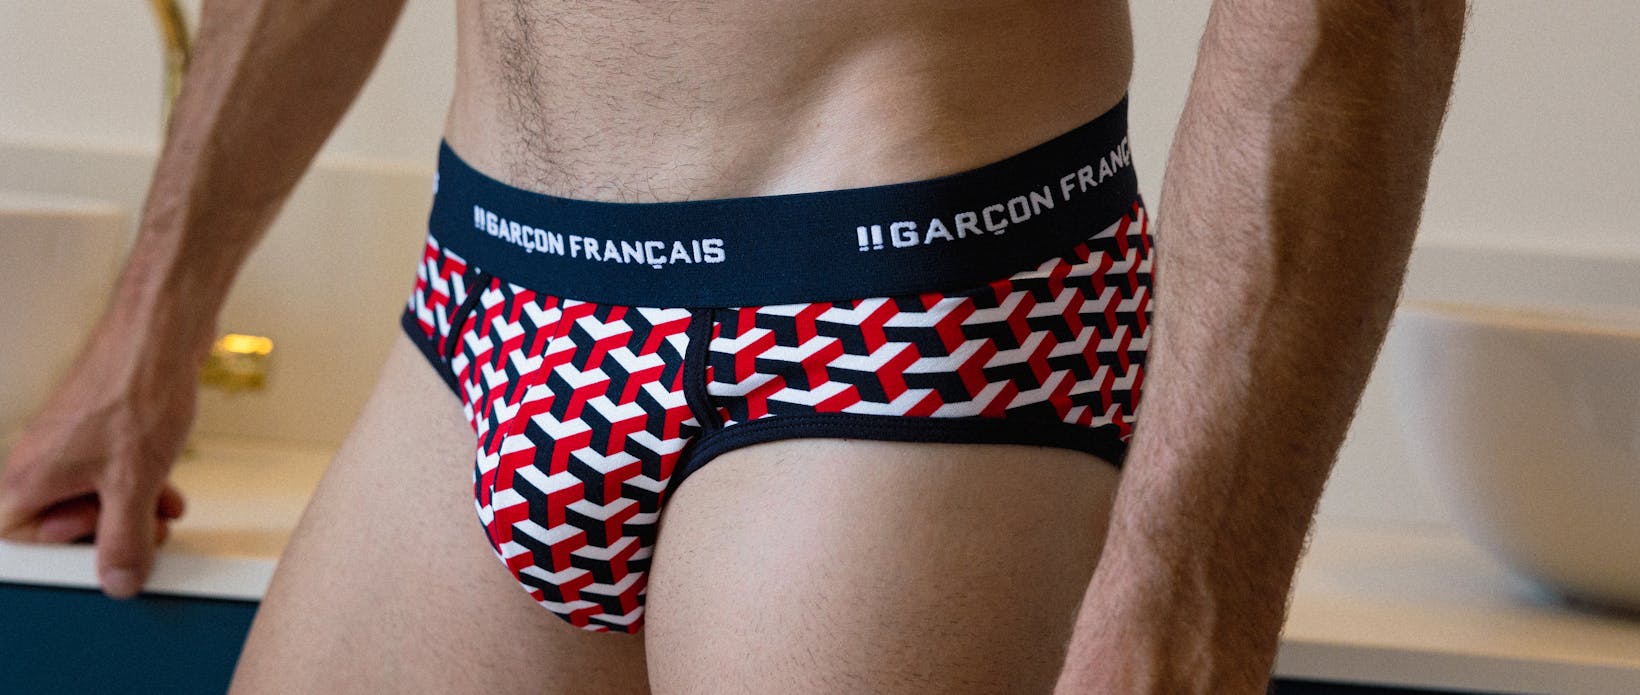 men's underwear made in France - Garçon Français